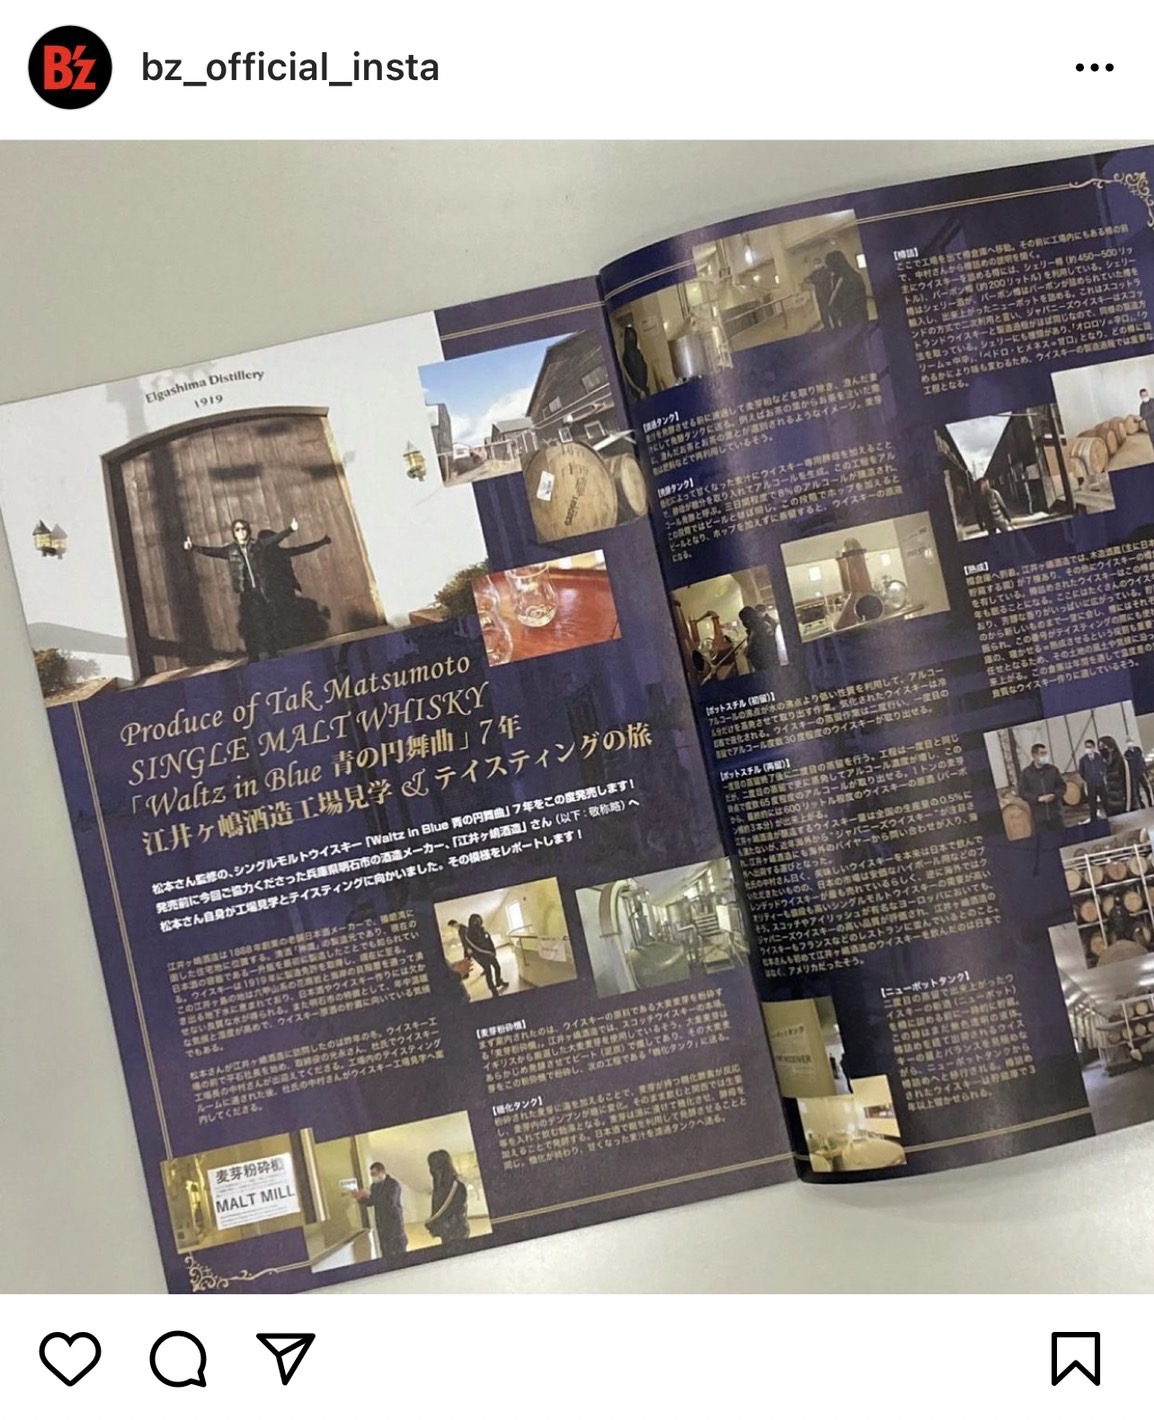 B'z公式SNSで公開された会報131号掲載の松本孝弘によるウイスキー工場見学レポートのページの画像